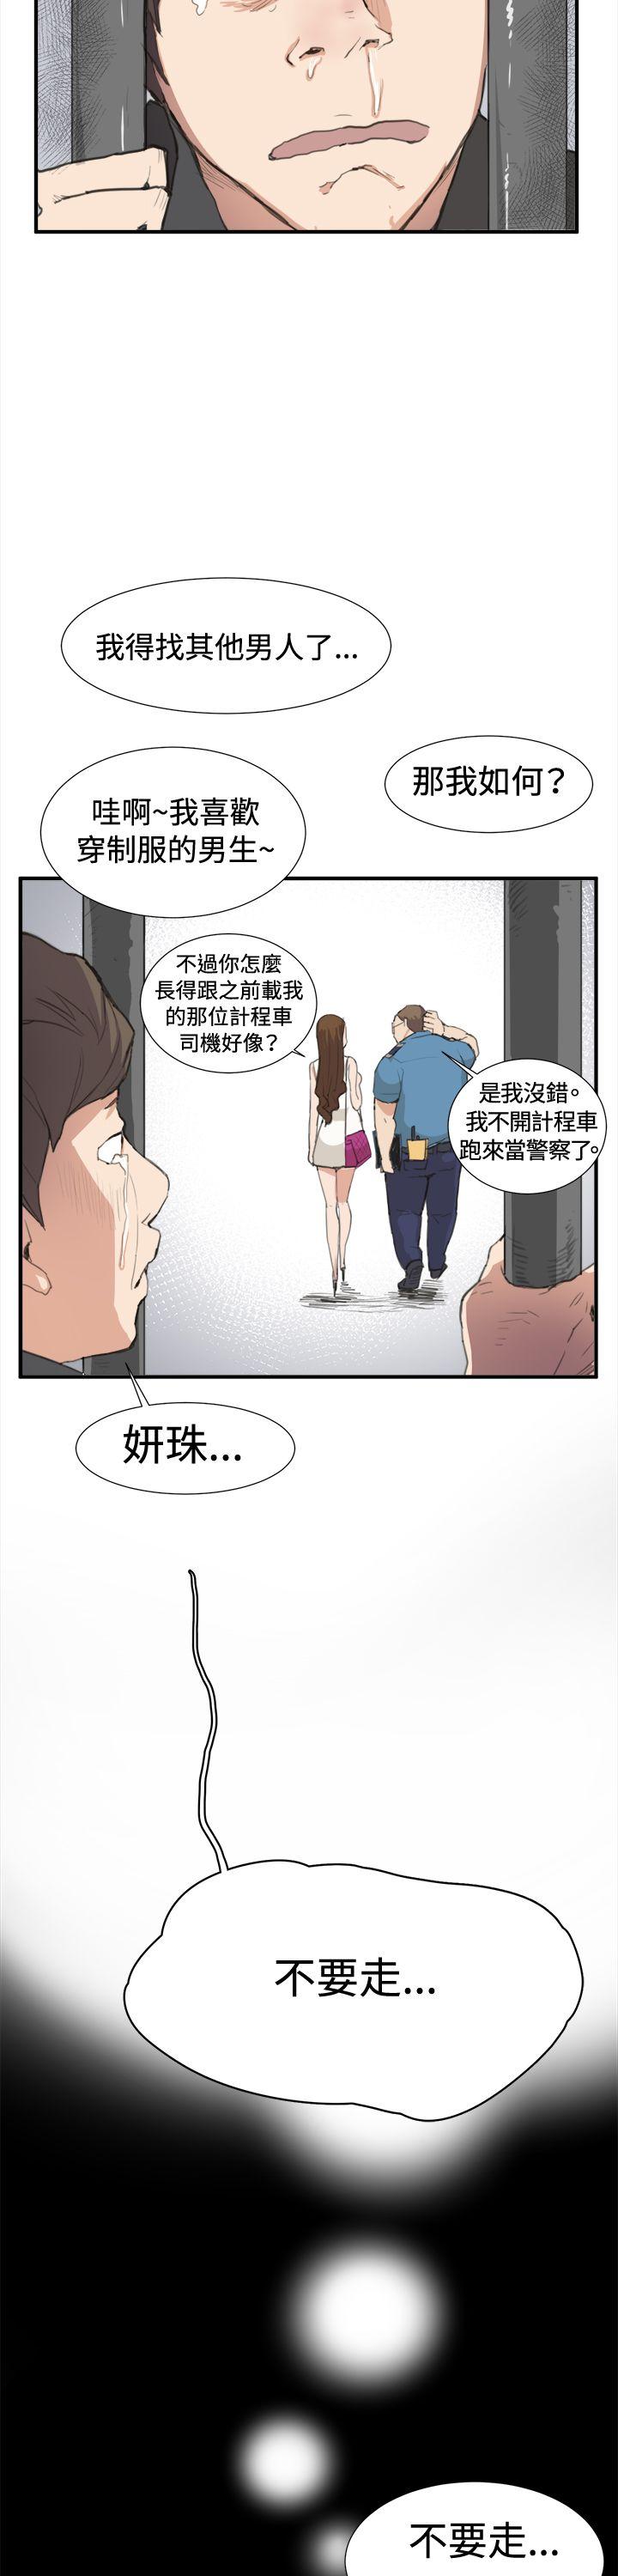 韩国污漫画 深夜便利店 第6话 13